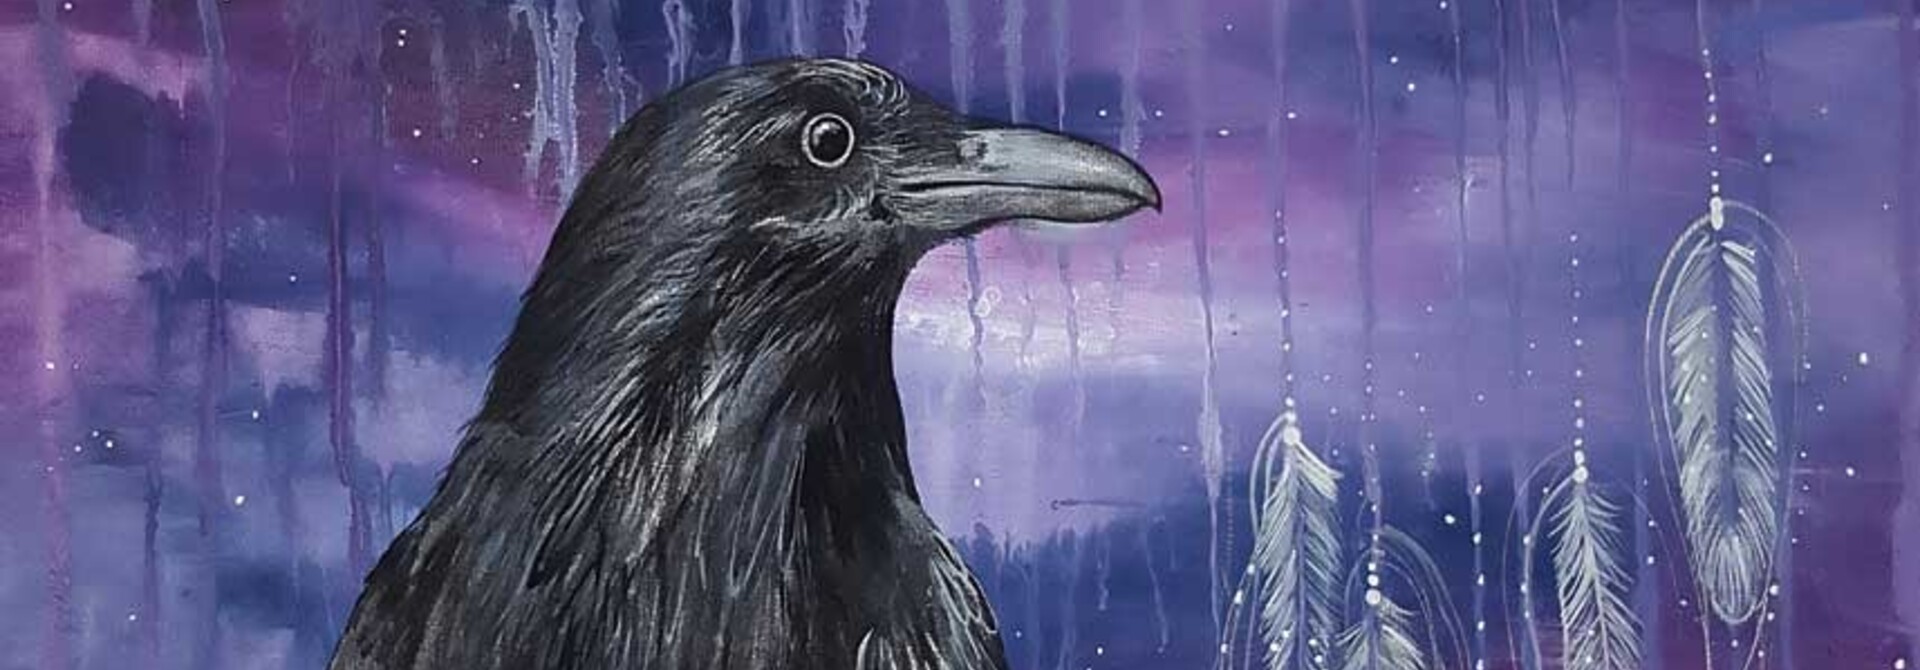 Raven Keeper Framed art Card by Karen Erickson